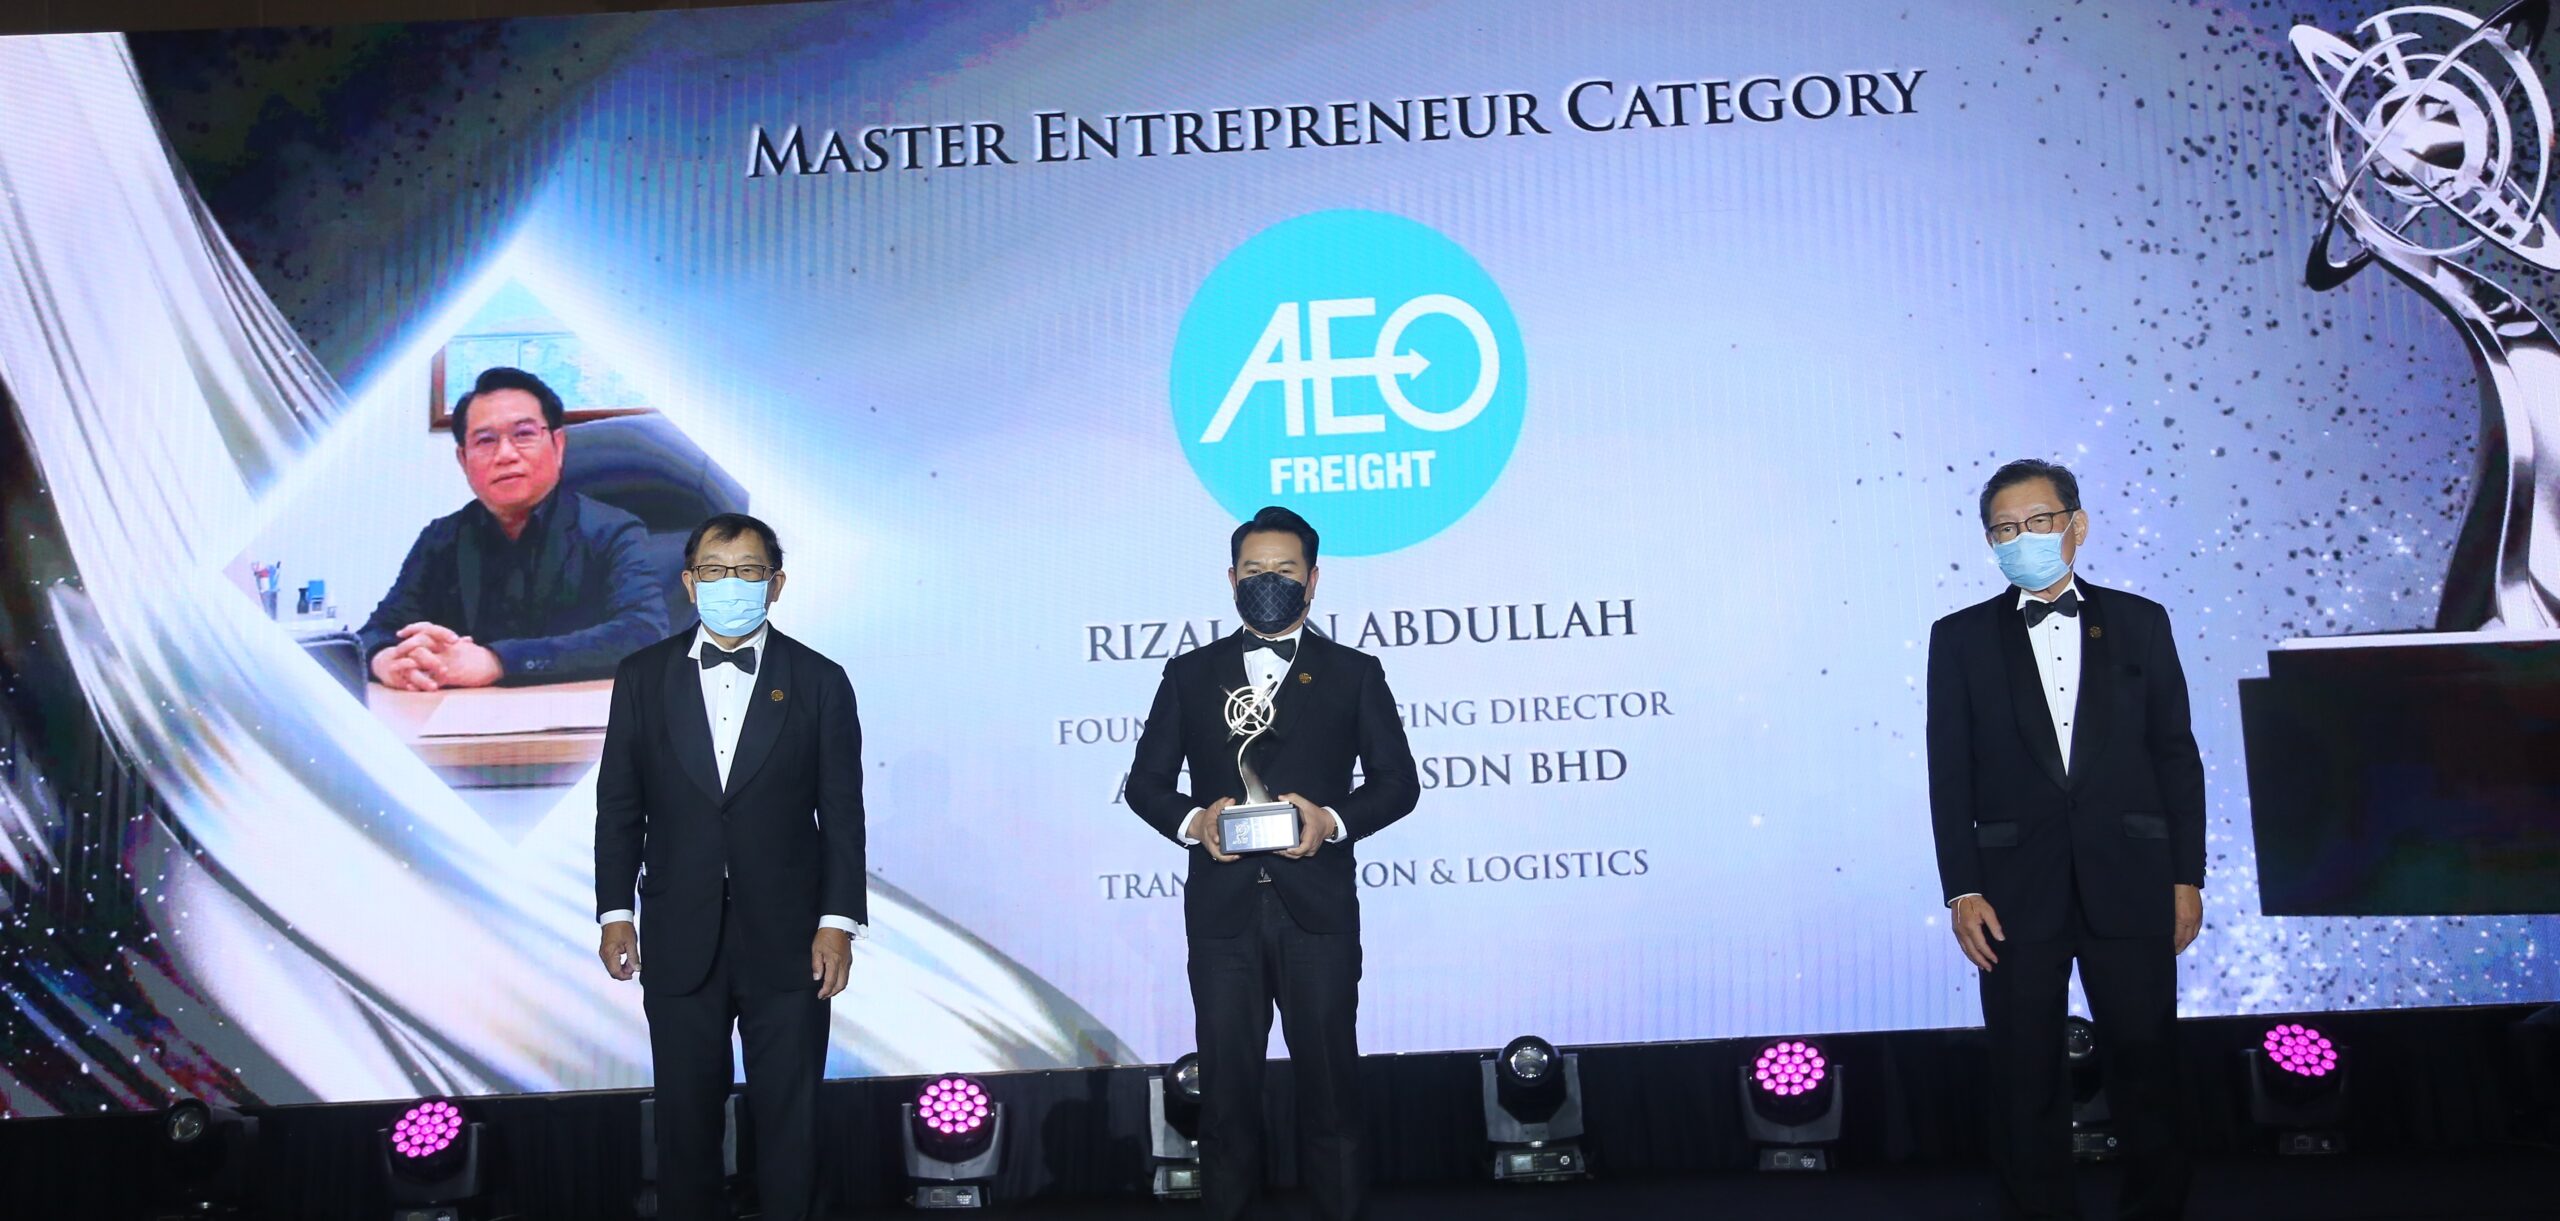 Asia Pacific Enterprise Awards